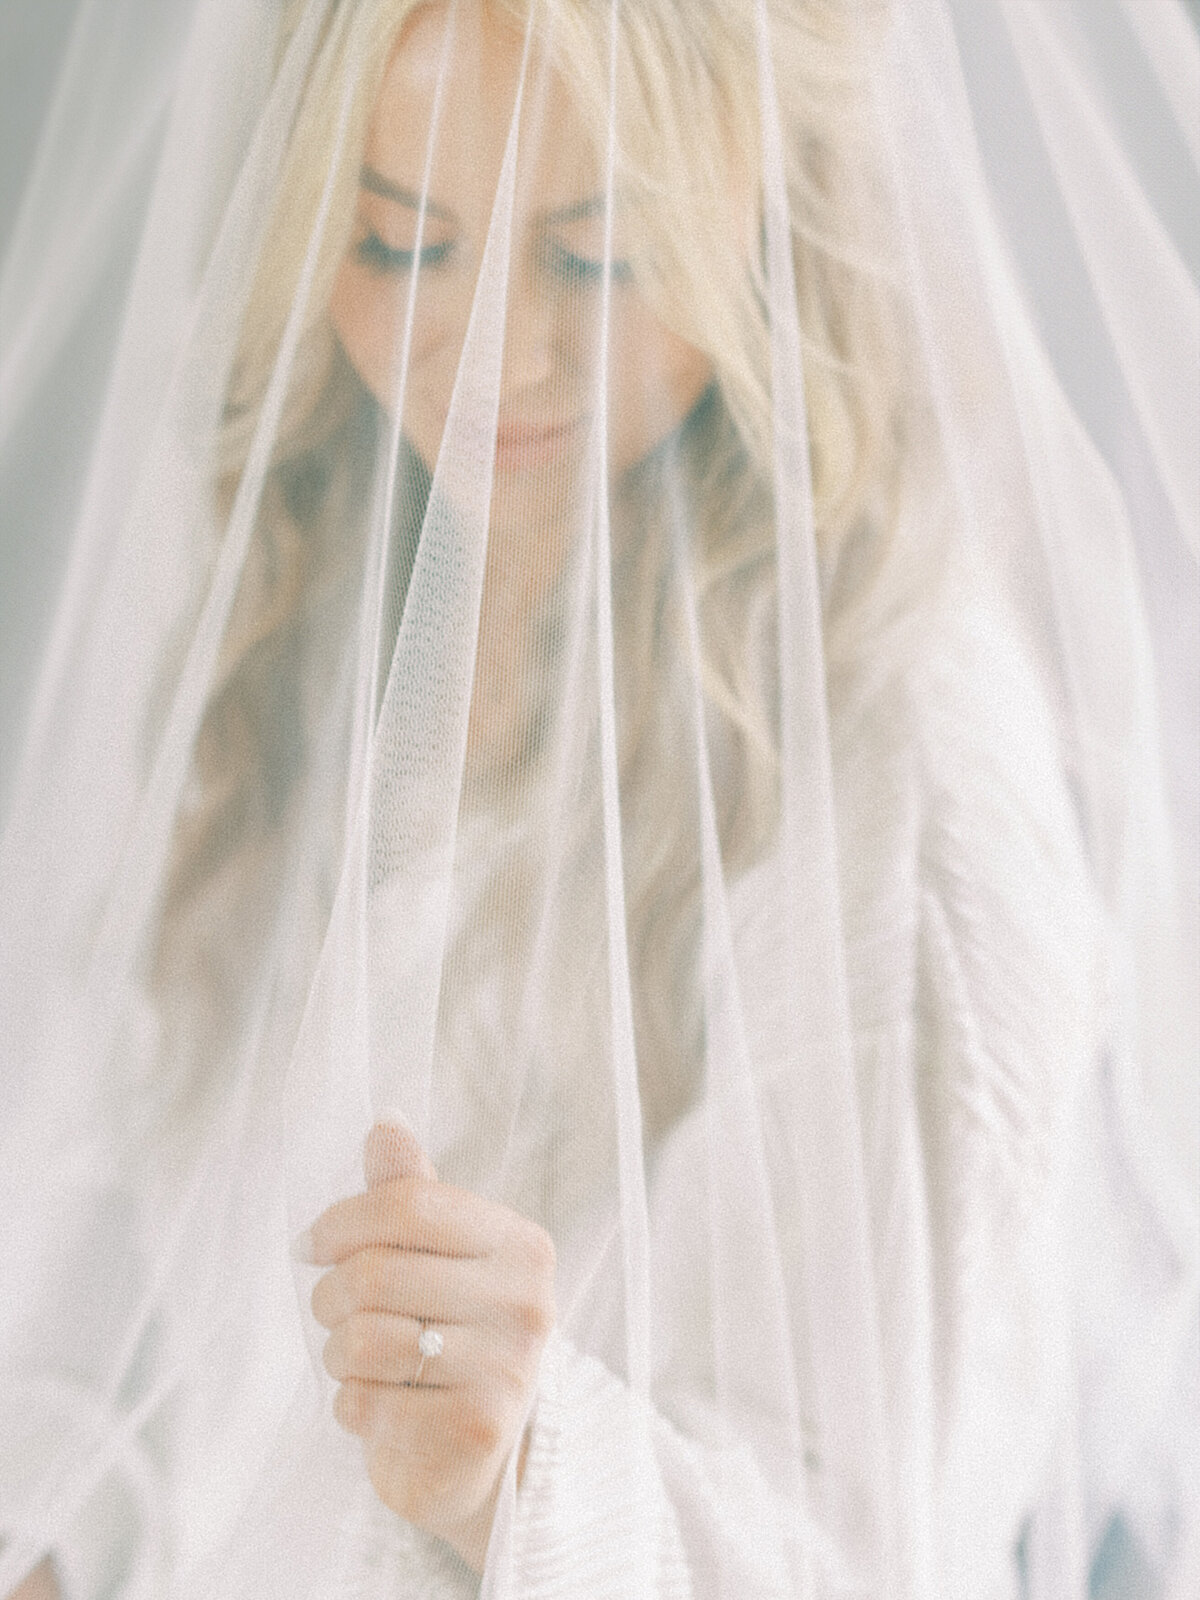 bridal portrait of bride under her veil on her wedding day